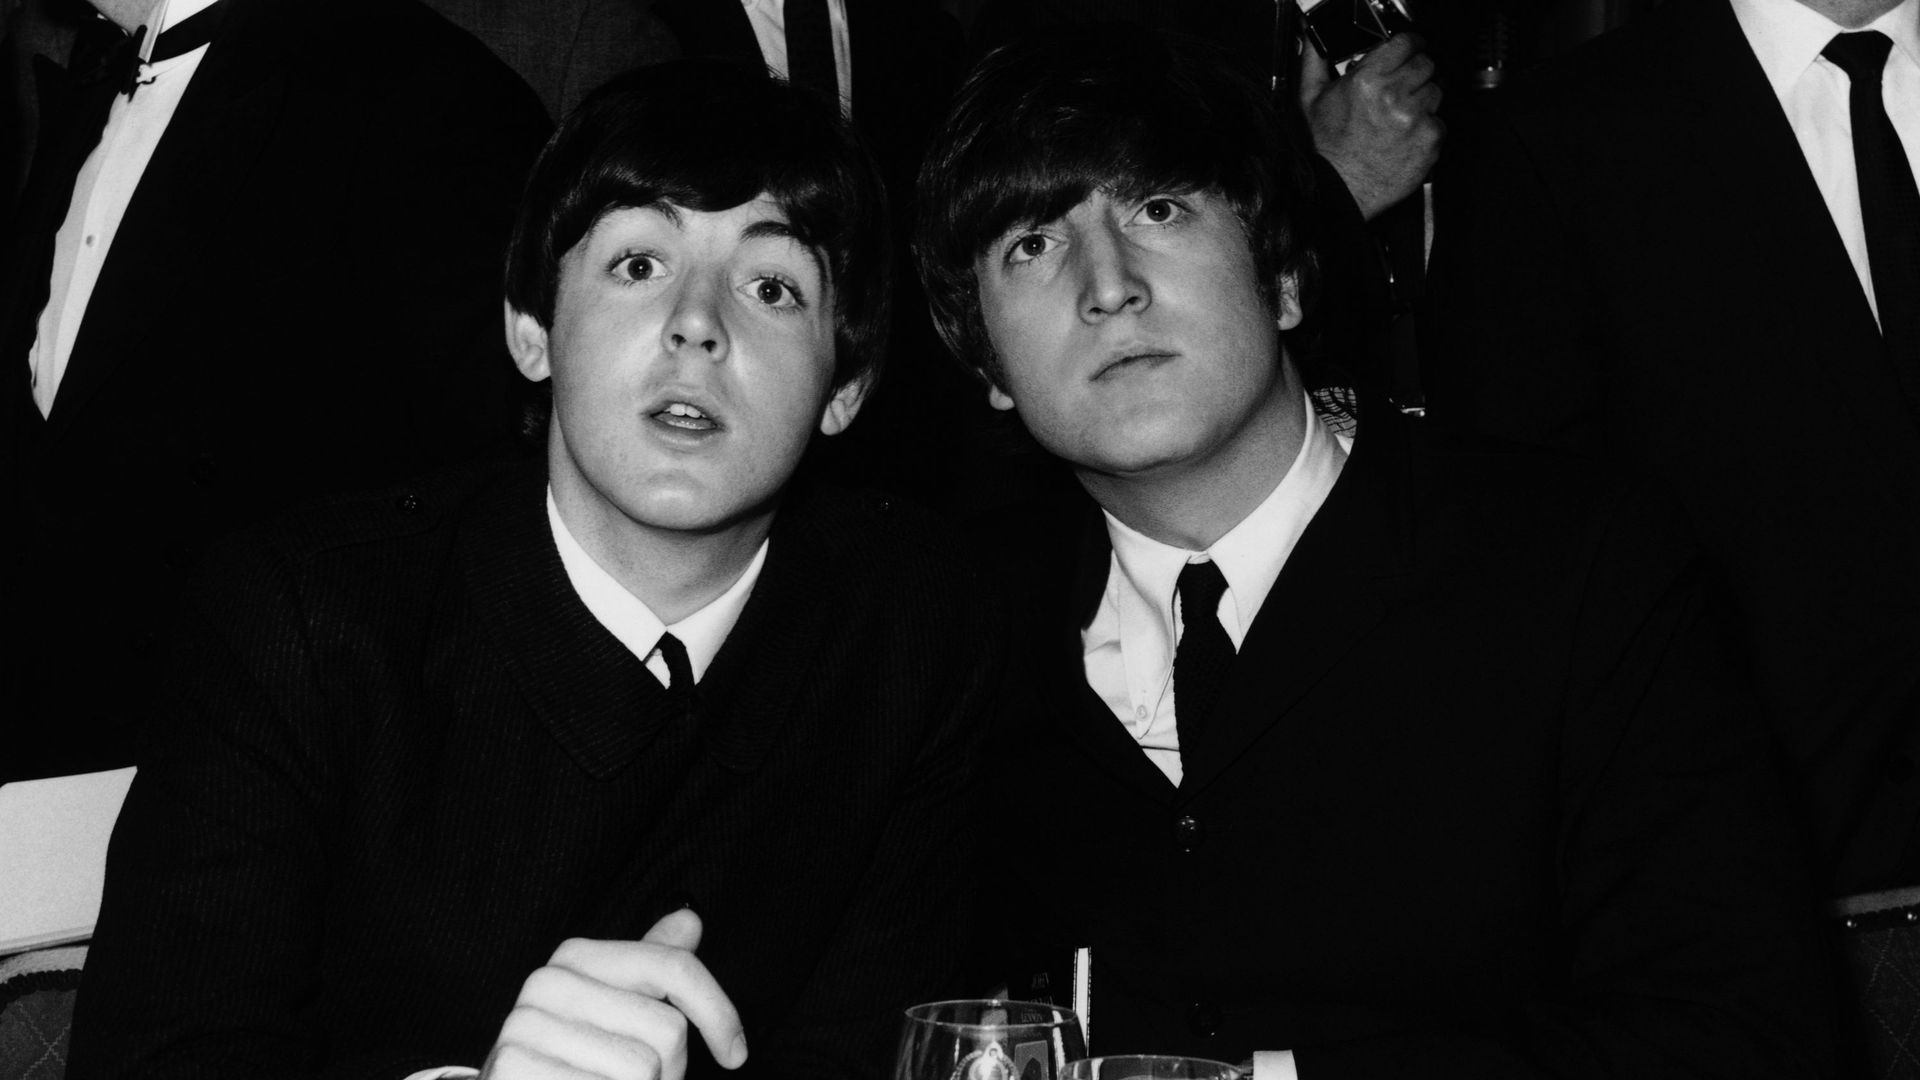 John And Paul